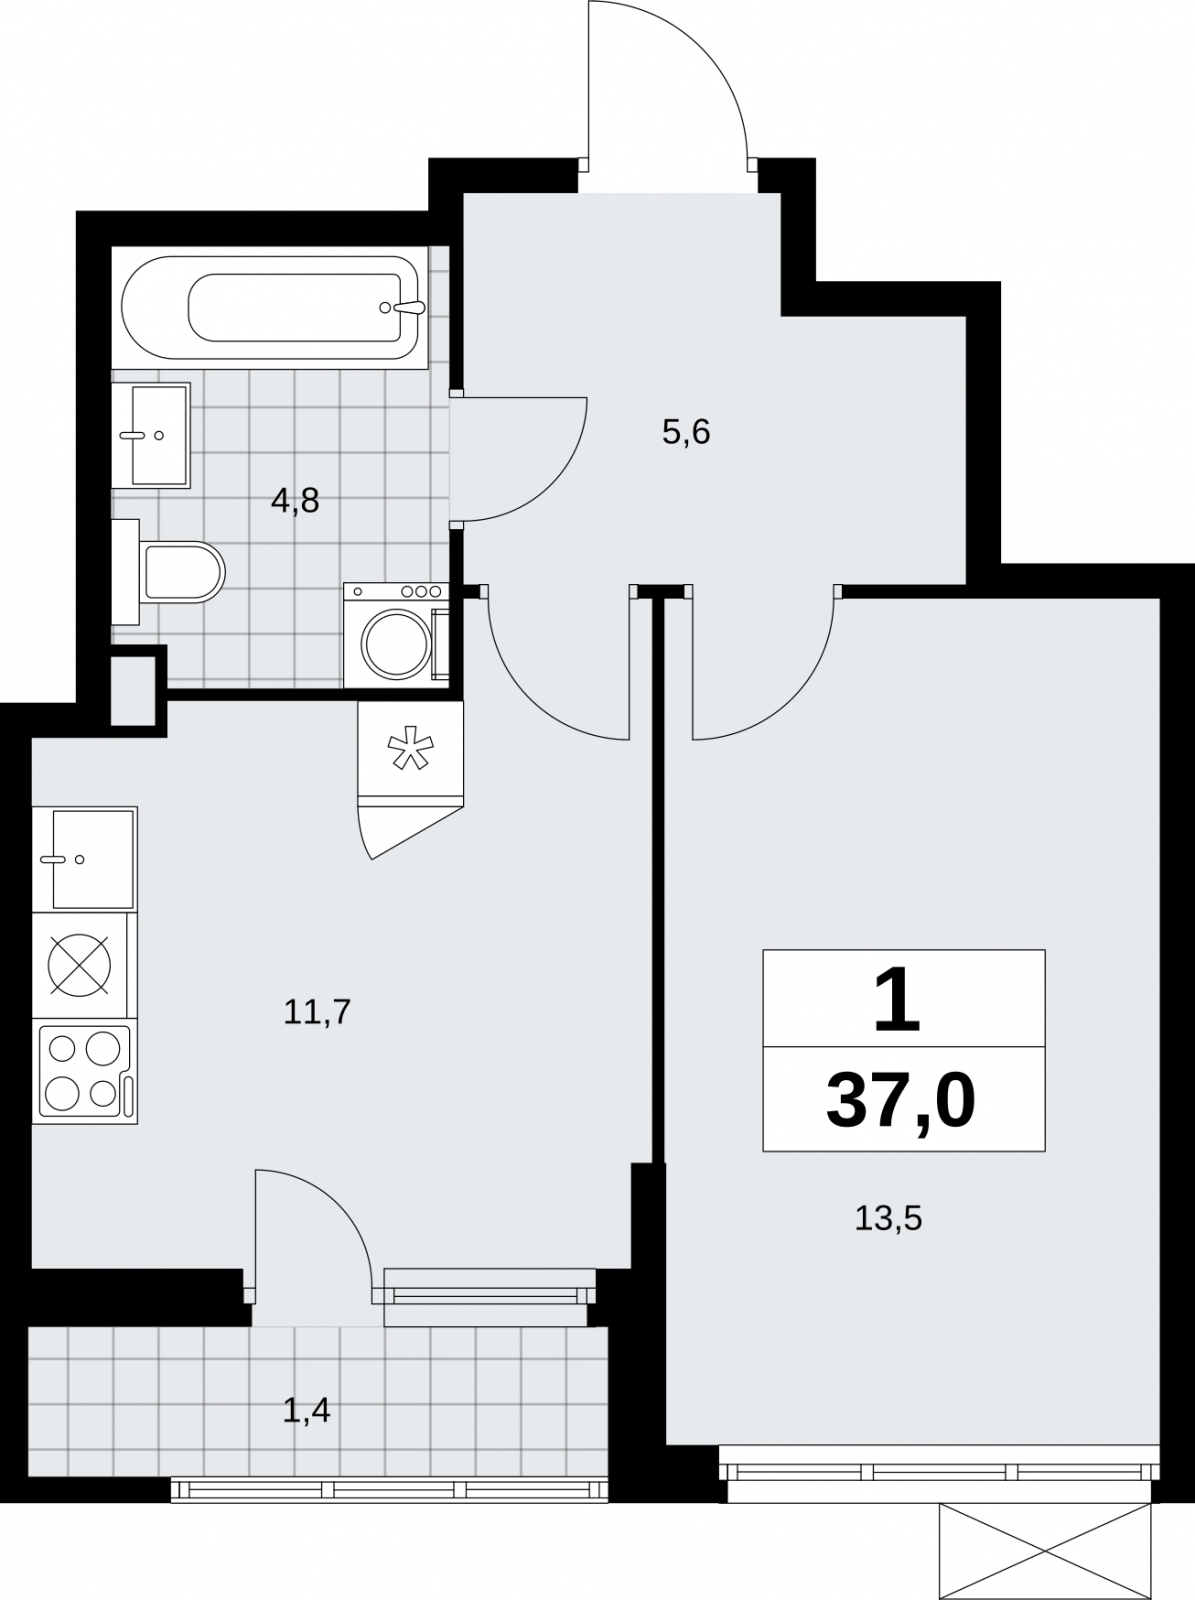 Продается просторная 1-комн. квартира в новом жилом комплексе, рядом с метро